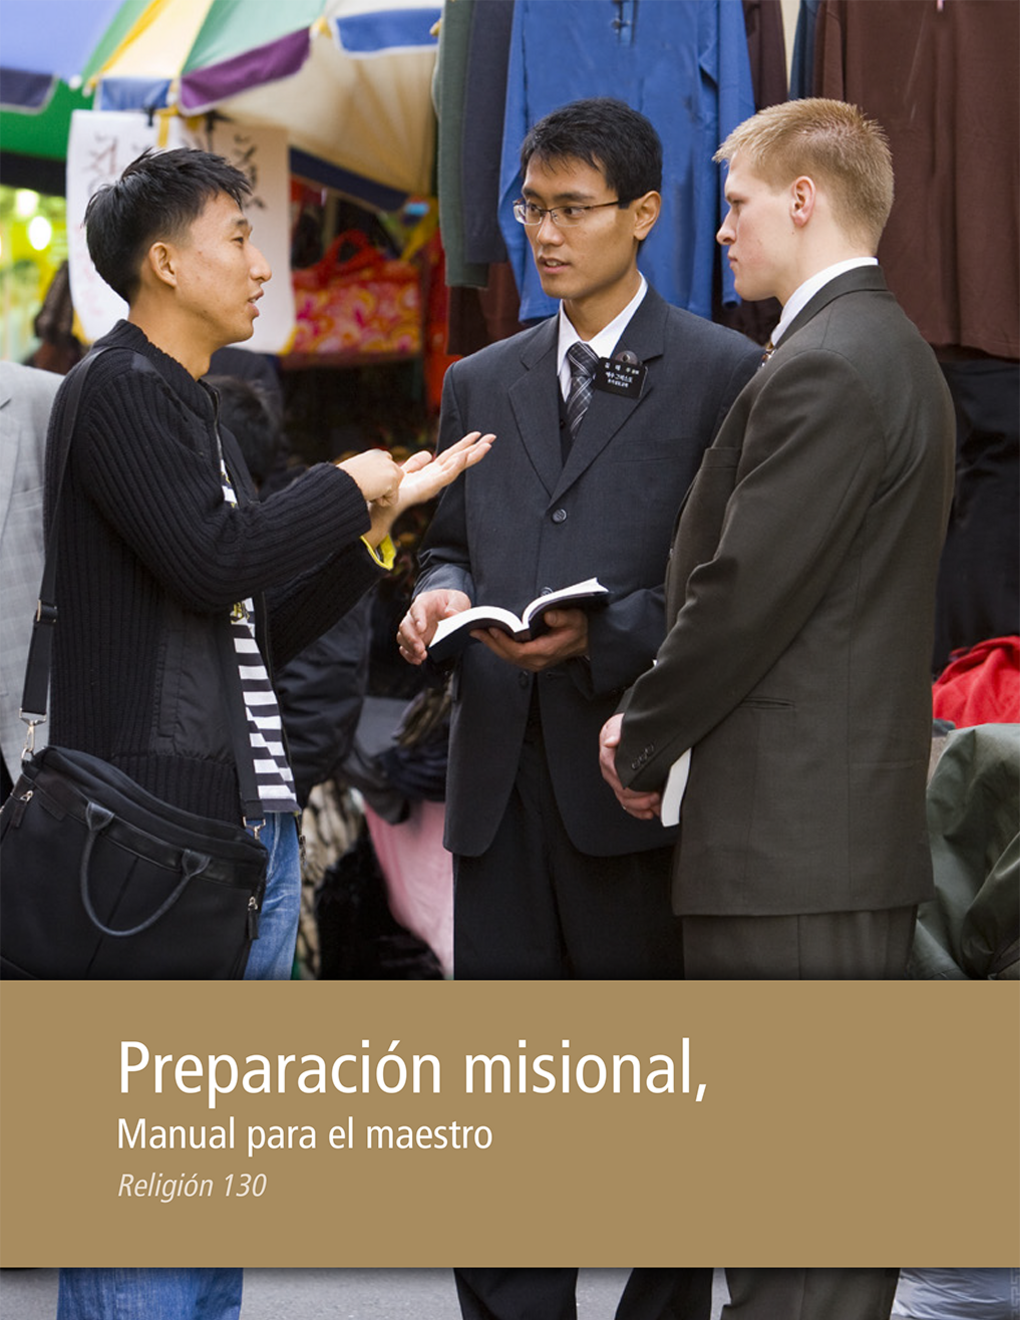 Preparación misional: Manual para el maestro (Religión 130)